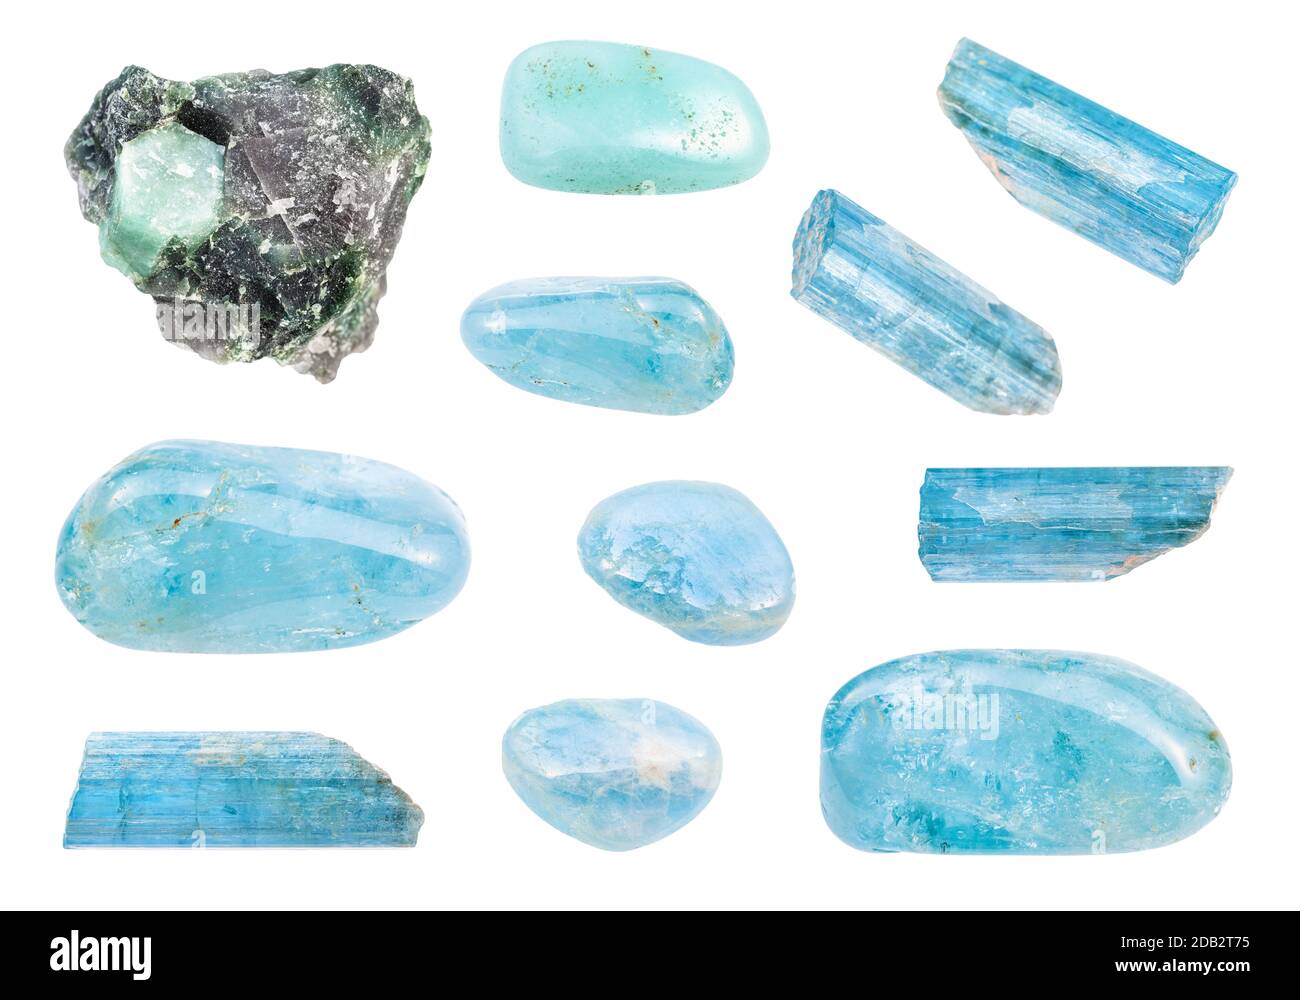 Set aus verschiedenen Aquamarin (blauem Beryl)-Edelsteinen, isoliert auf weißem Hintergrund Stockfoto